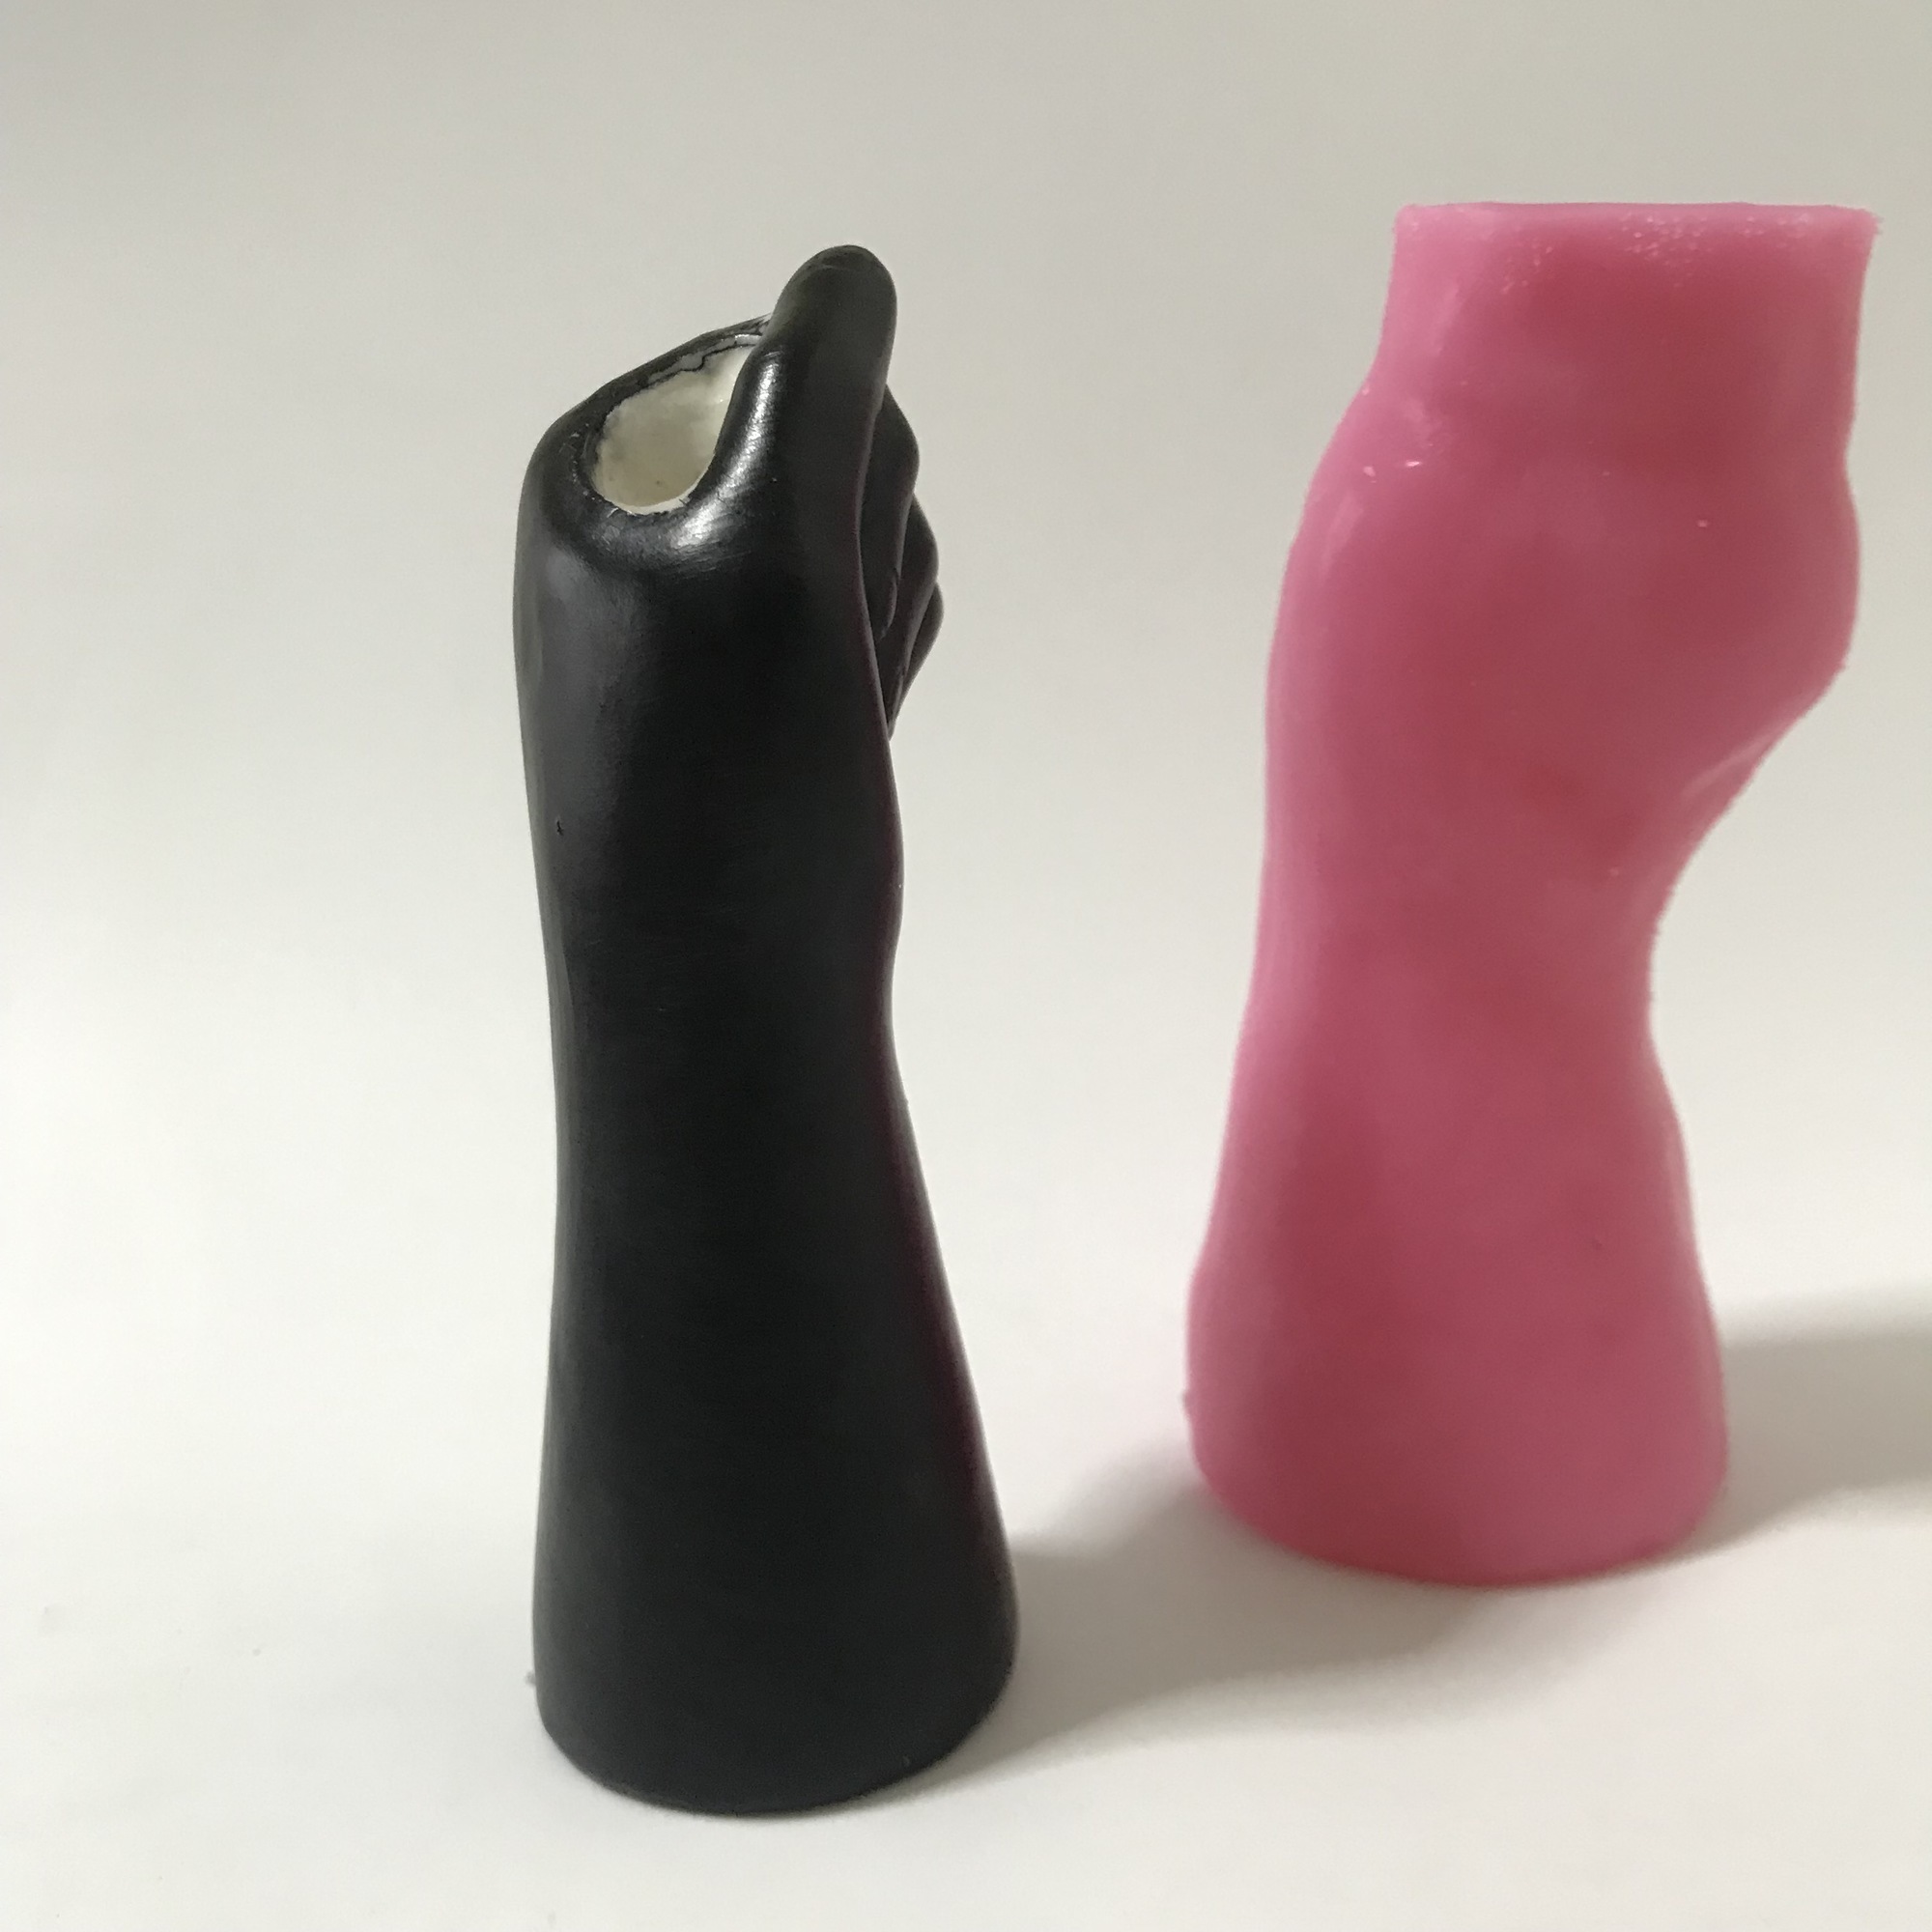 Mumlar 3D El Kalem Tutucu Mum Yapımı Silikon Kalıp Alçı Reçine Zanaat Küçük Dekorasyon Vazo Kalıp 221108